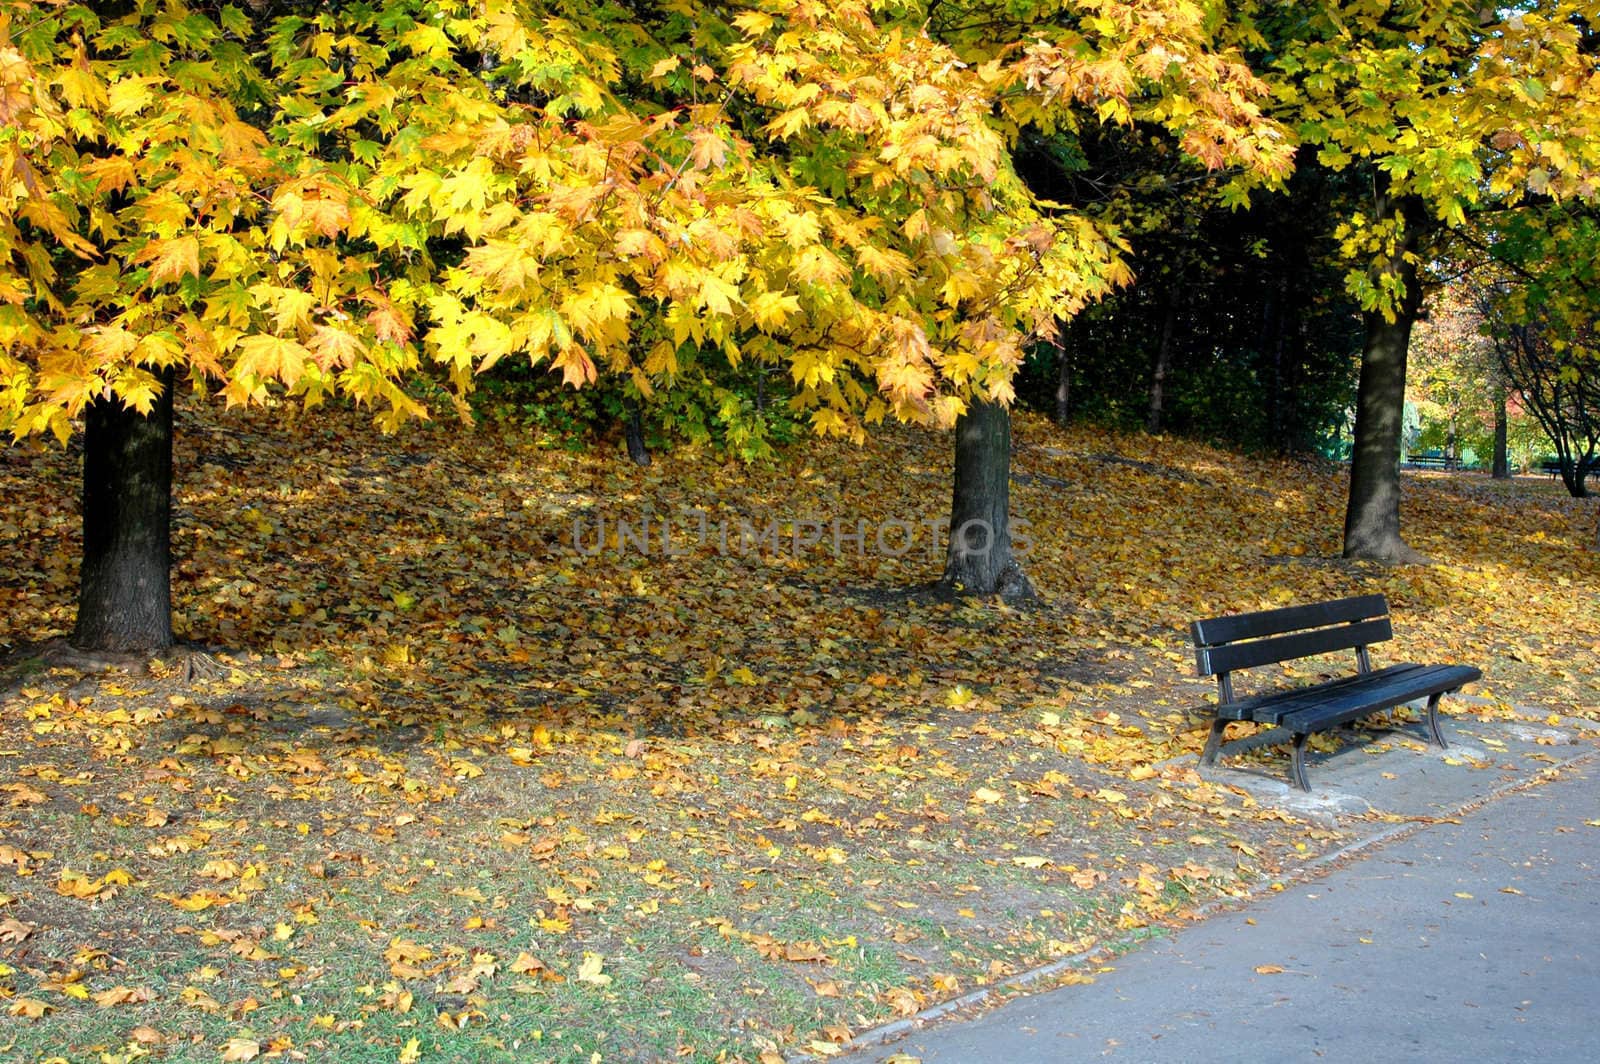 A park on the sunny autumn day